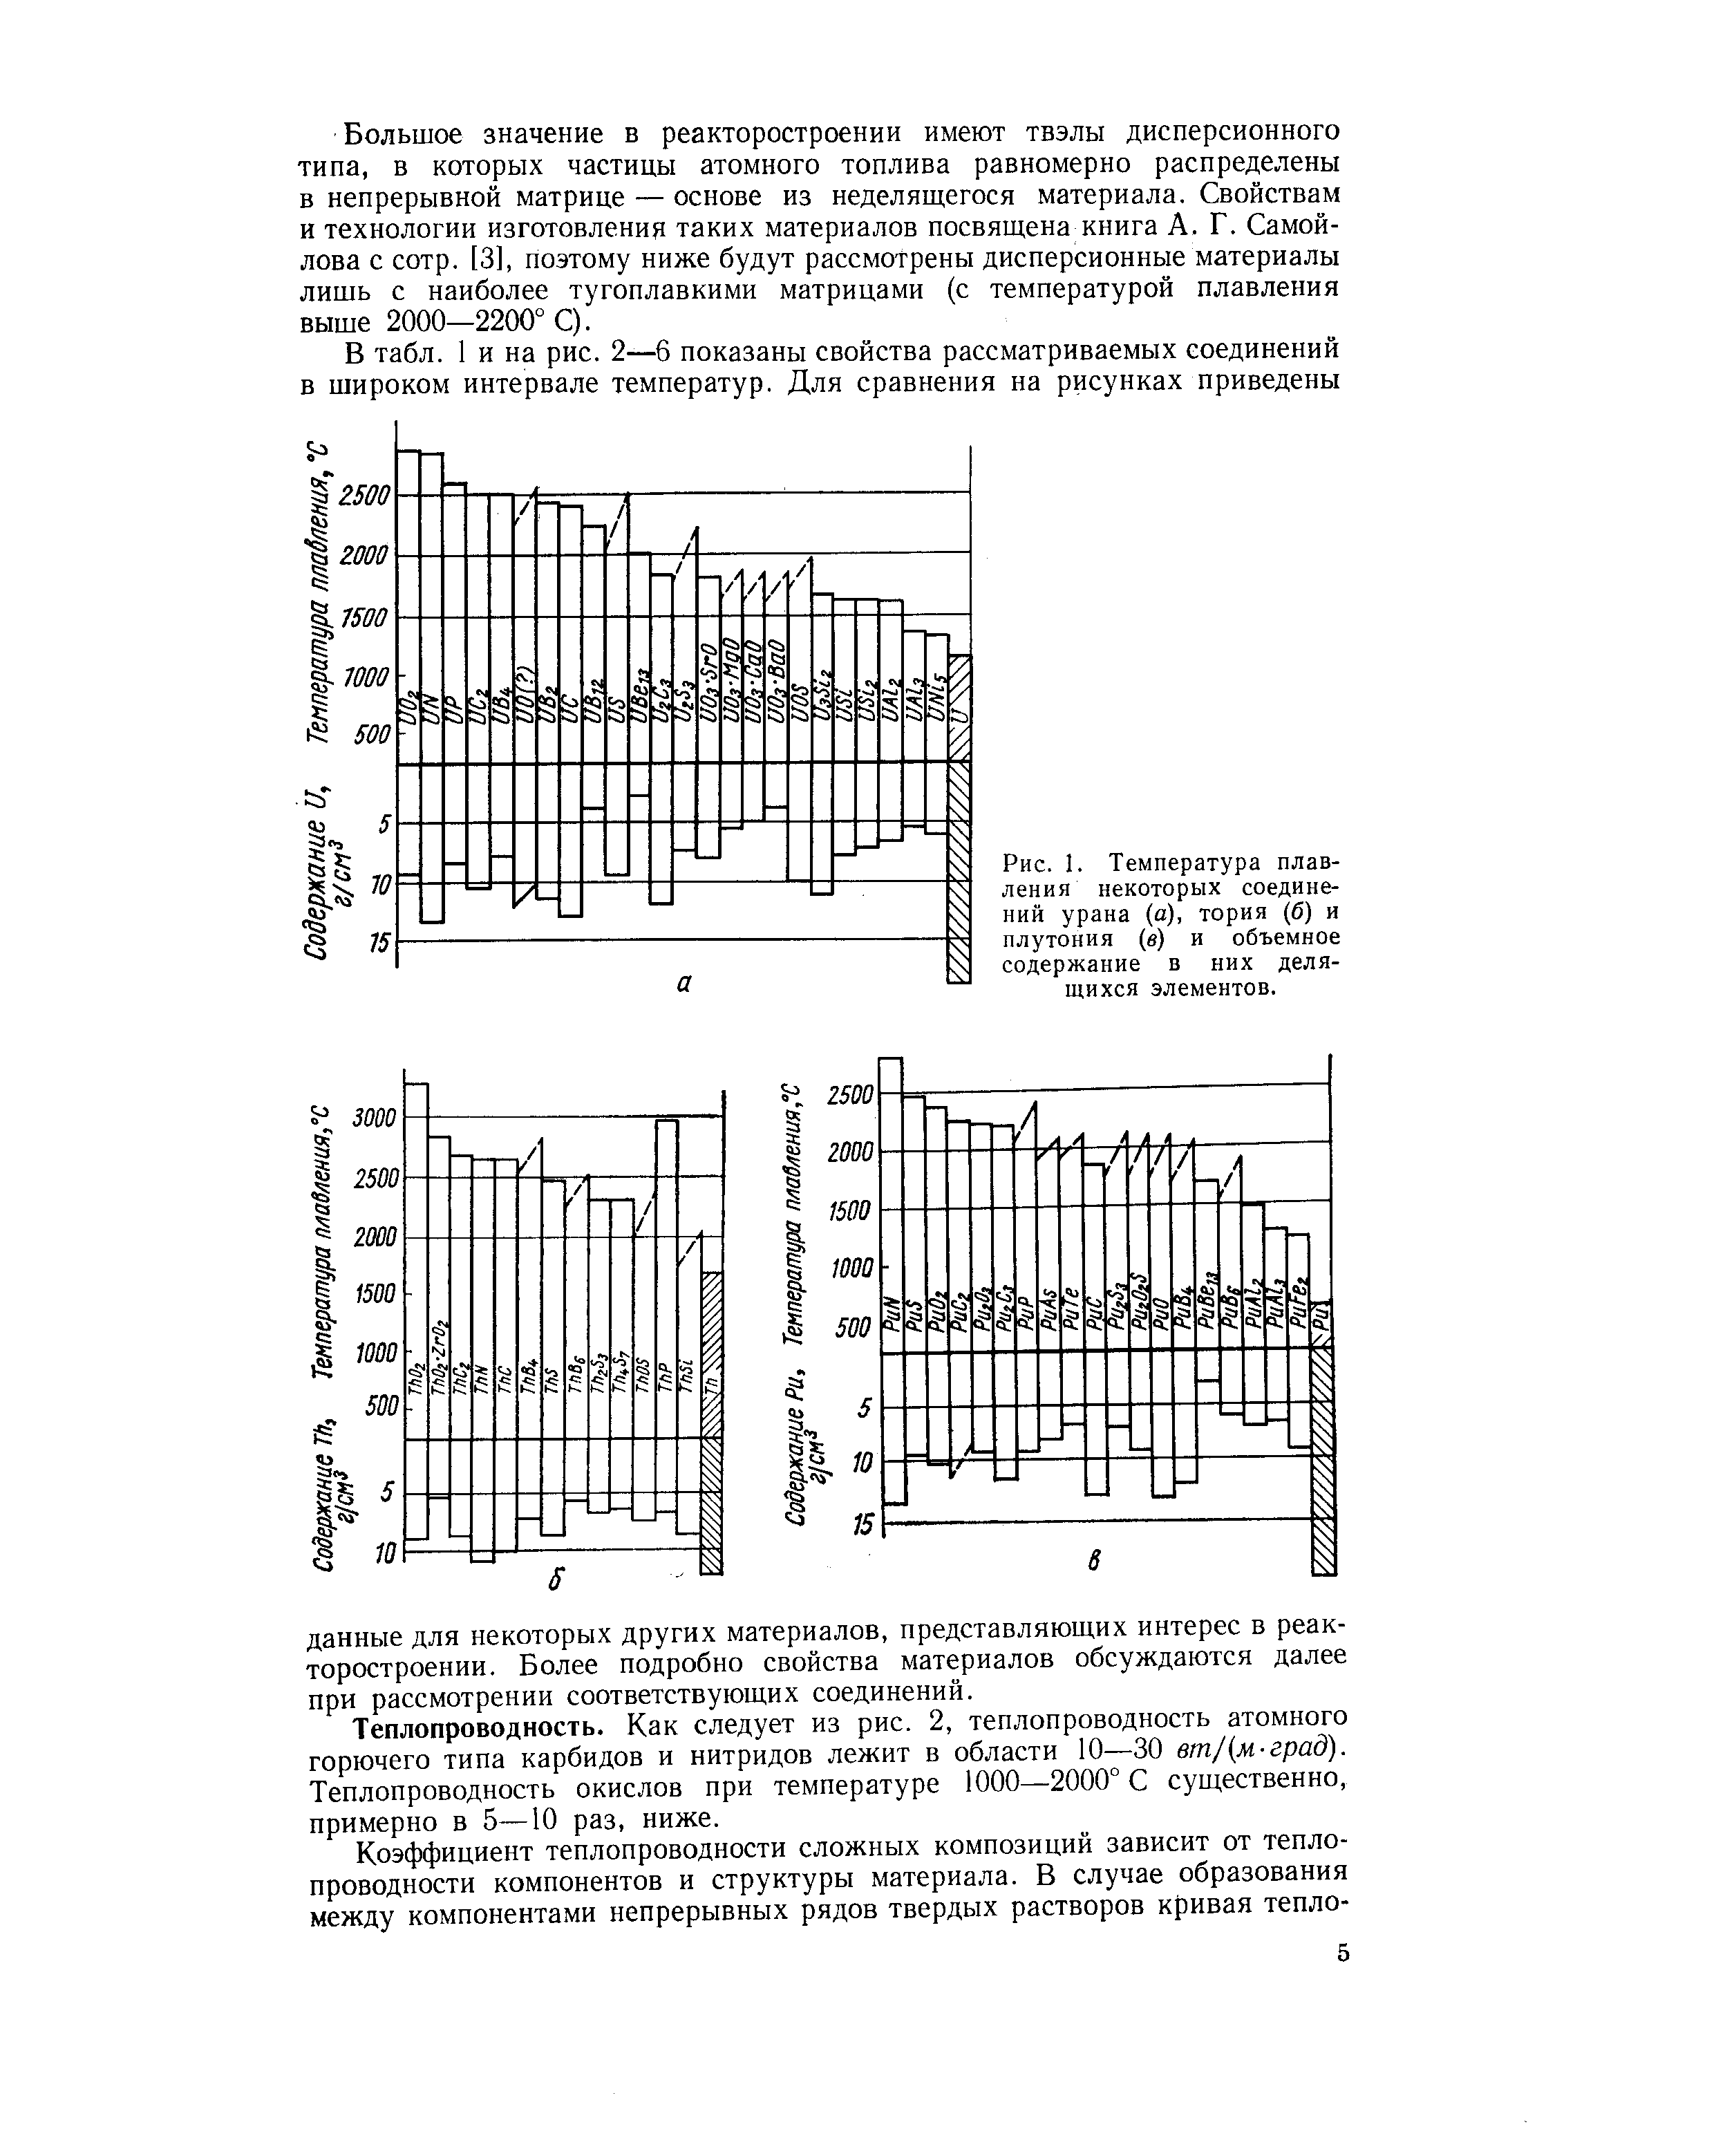 Рис. 1. Температура плавления некоторых соединений урана (а), тория (б) и плутония (в) и объемное содержание в них делящихся элементов.
